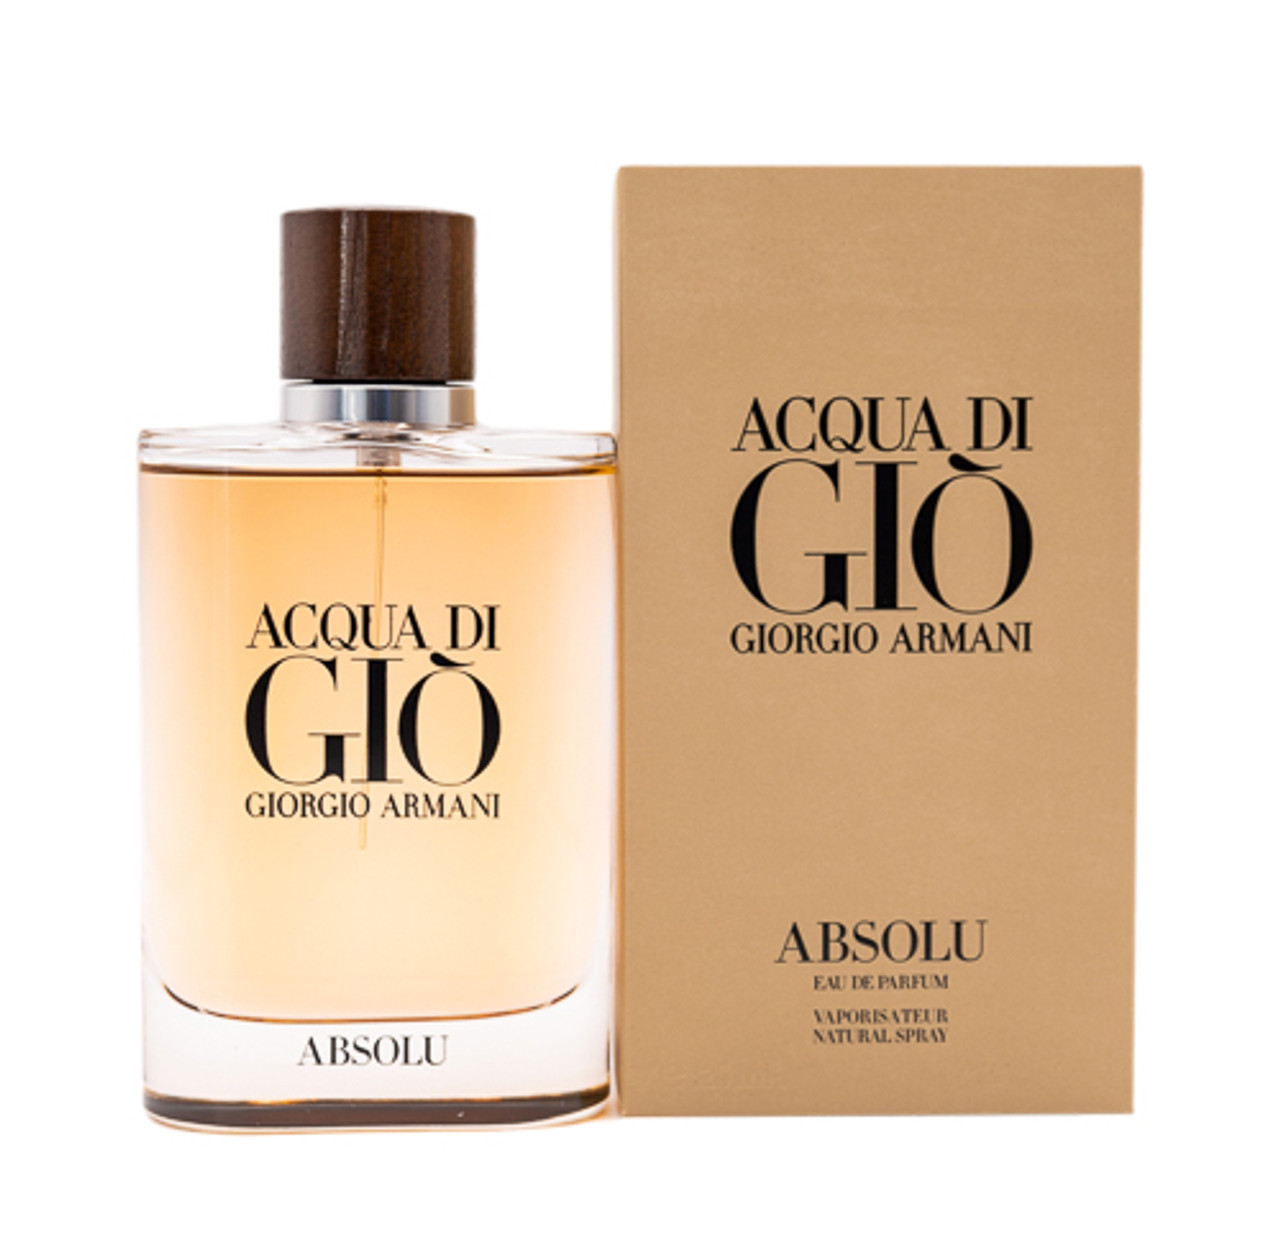 Acqua di Gio Profondo by Giorgio Armani Eau de Parfum Spray 4.2 oz Men